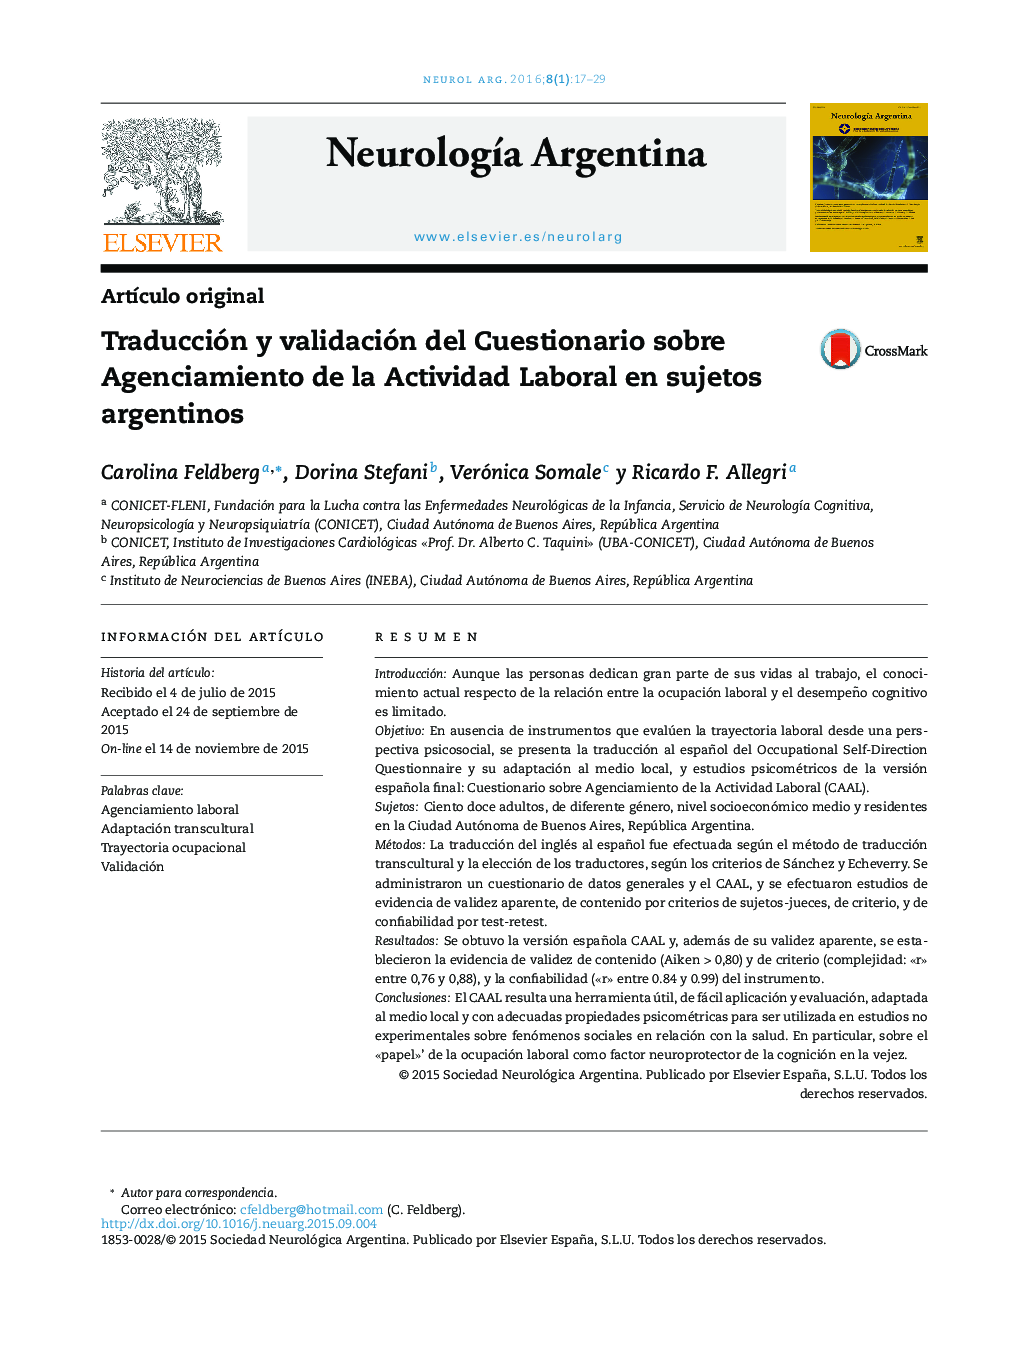 Traducción y validación del Cuestionario sobre Agenciamiento de la Actividad Laboral en sujetos argentinos